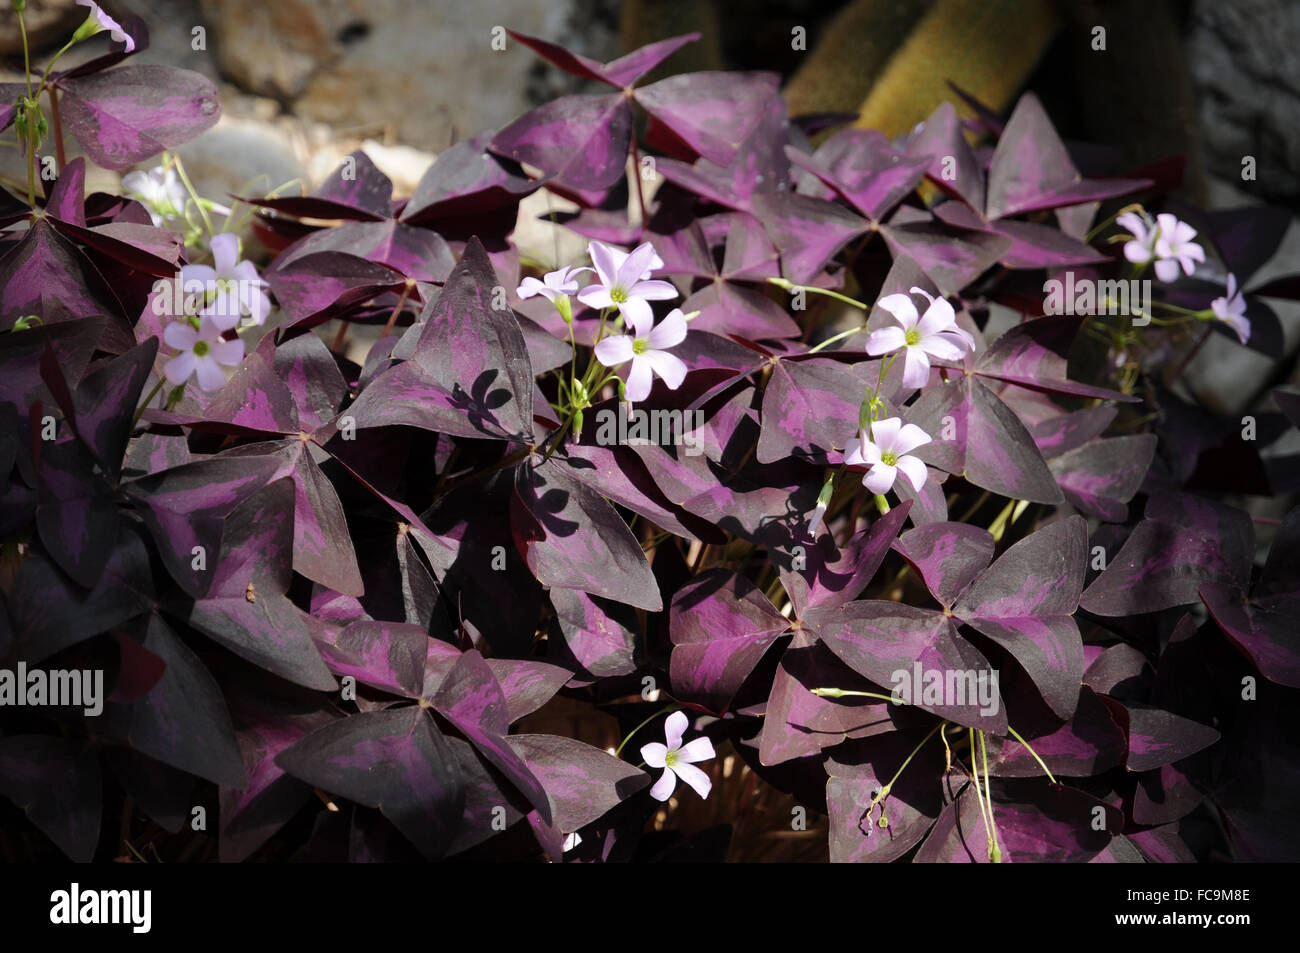 Purple shamrock plant Stock Photo